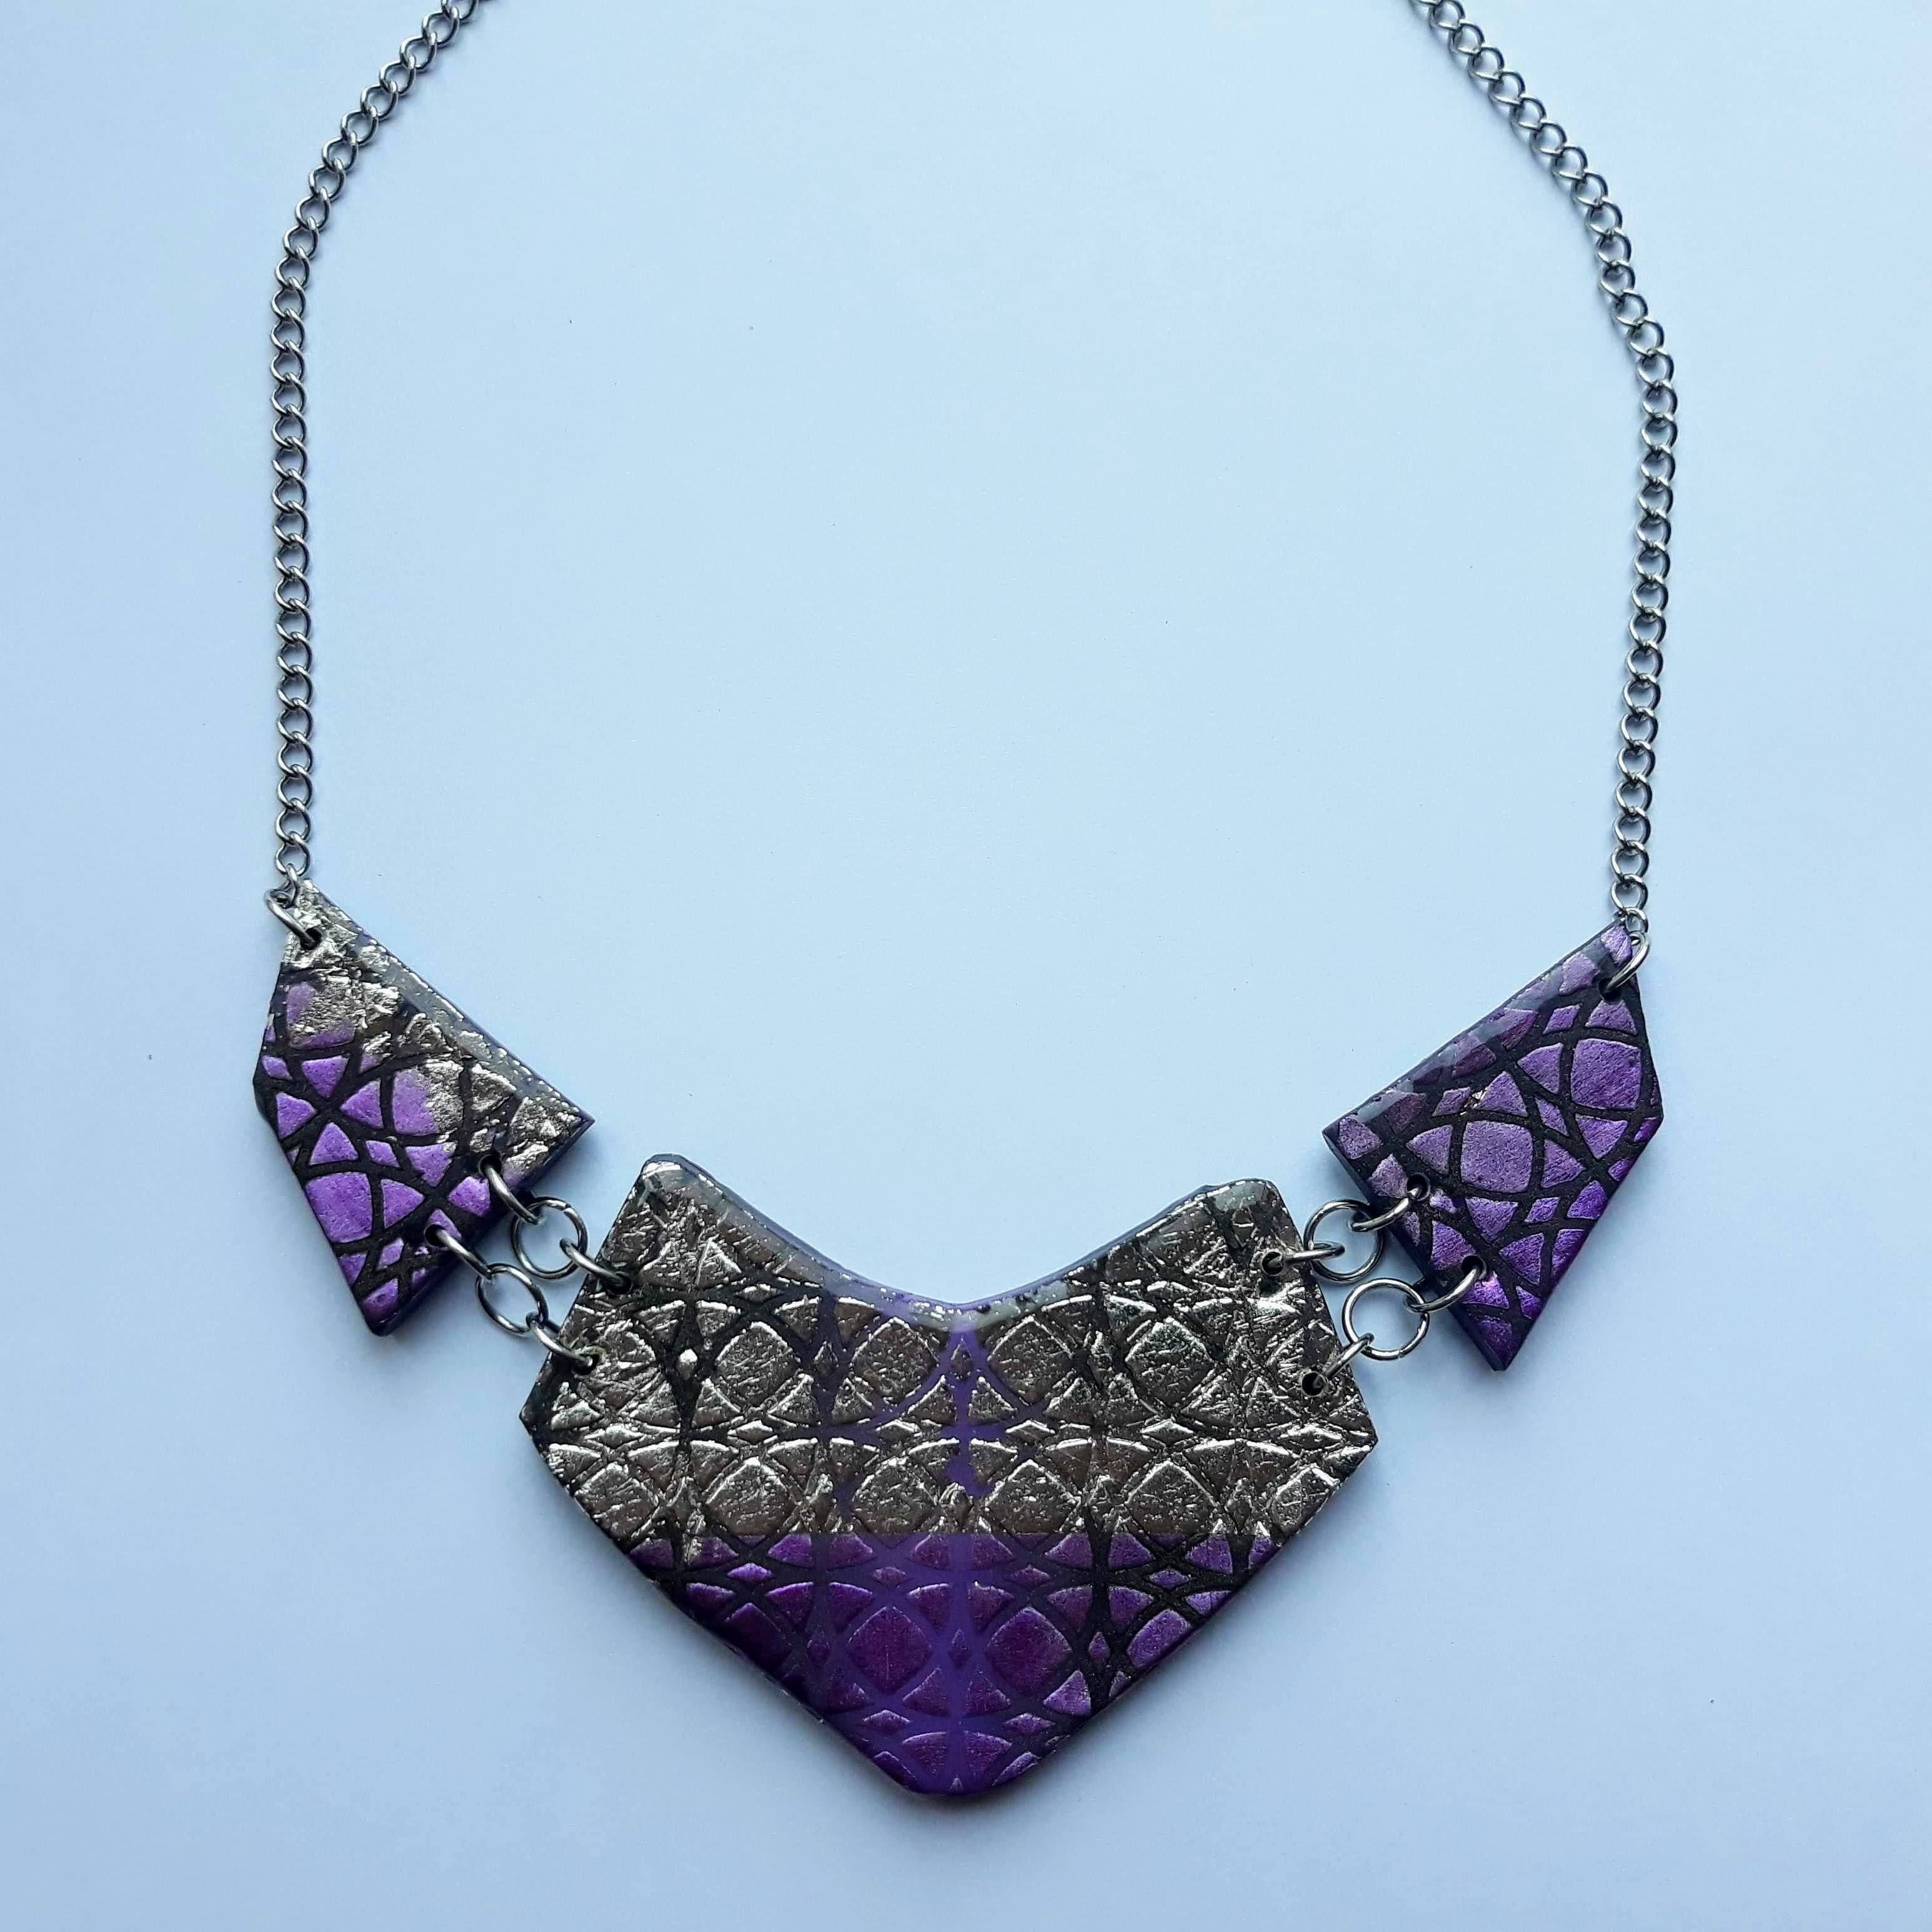 Collar Fantasy Metallic Violeta y Plata